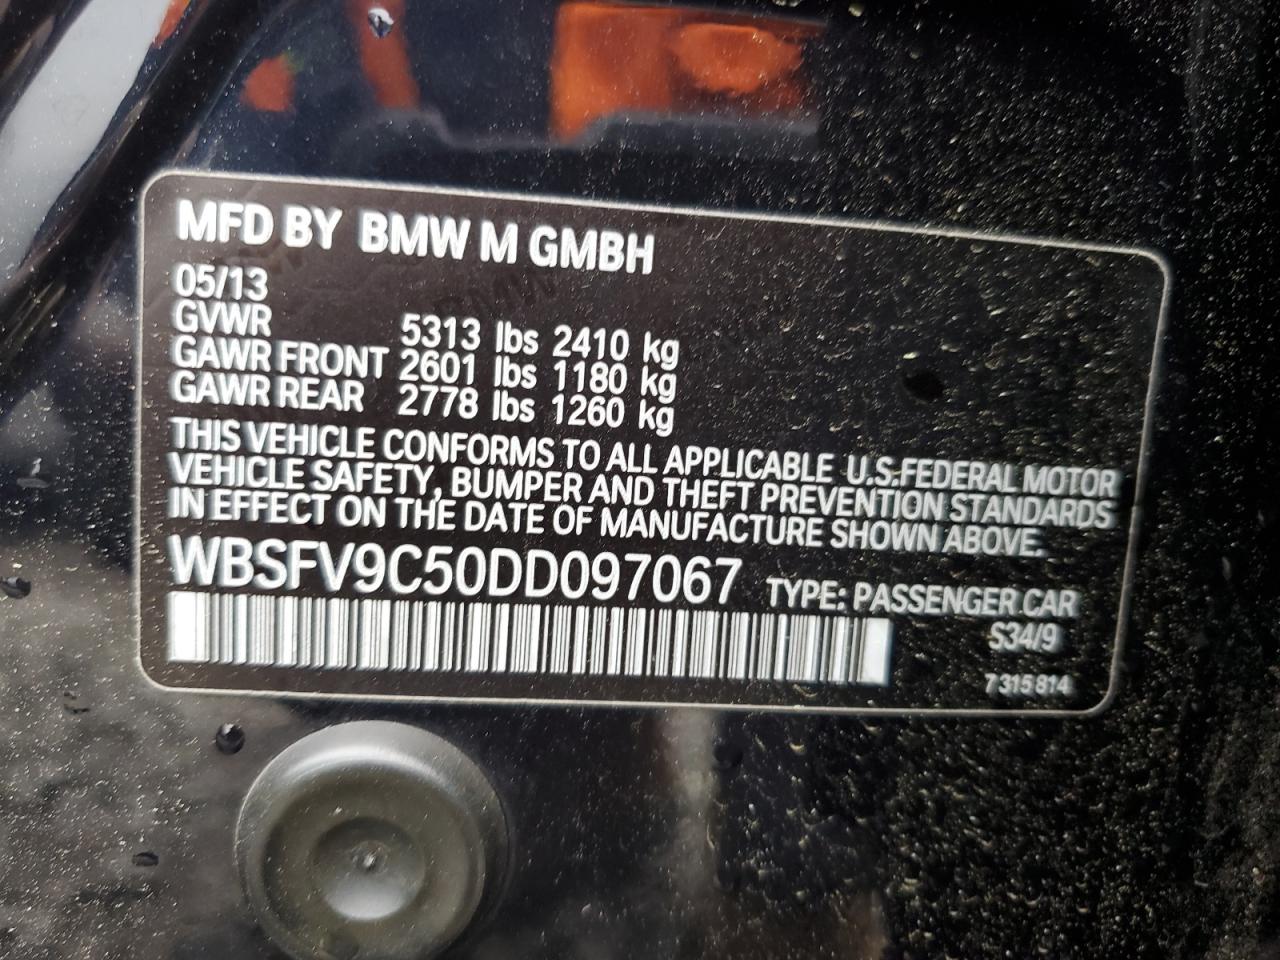 WBSFV9C50DD097067  - BMW M5  2013 IMG - 11